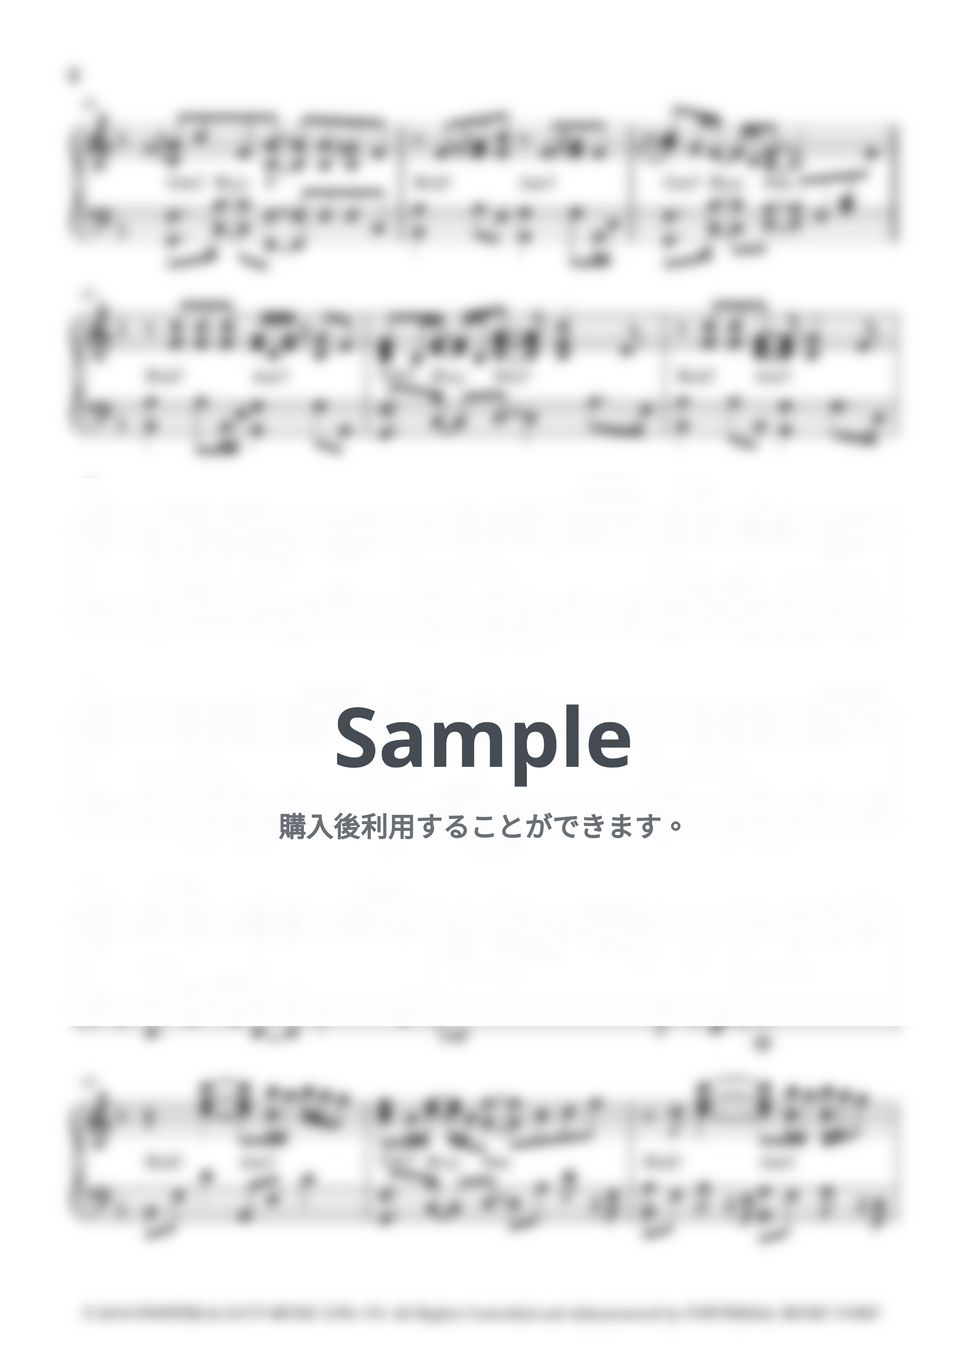 RENT - SEASONS OF LOVE (ミュージカル「ＲＥＮＴ」より SEASONS OF LOVE  この楽譜はYoutubeで石田みどり(minonin)が即興演奏したピアノアレンジを採譜したものです) by Midori IShida